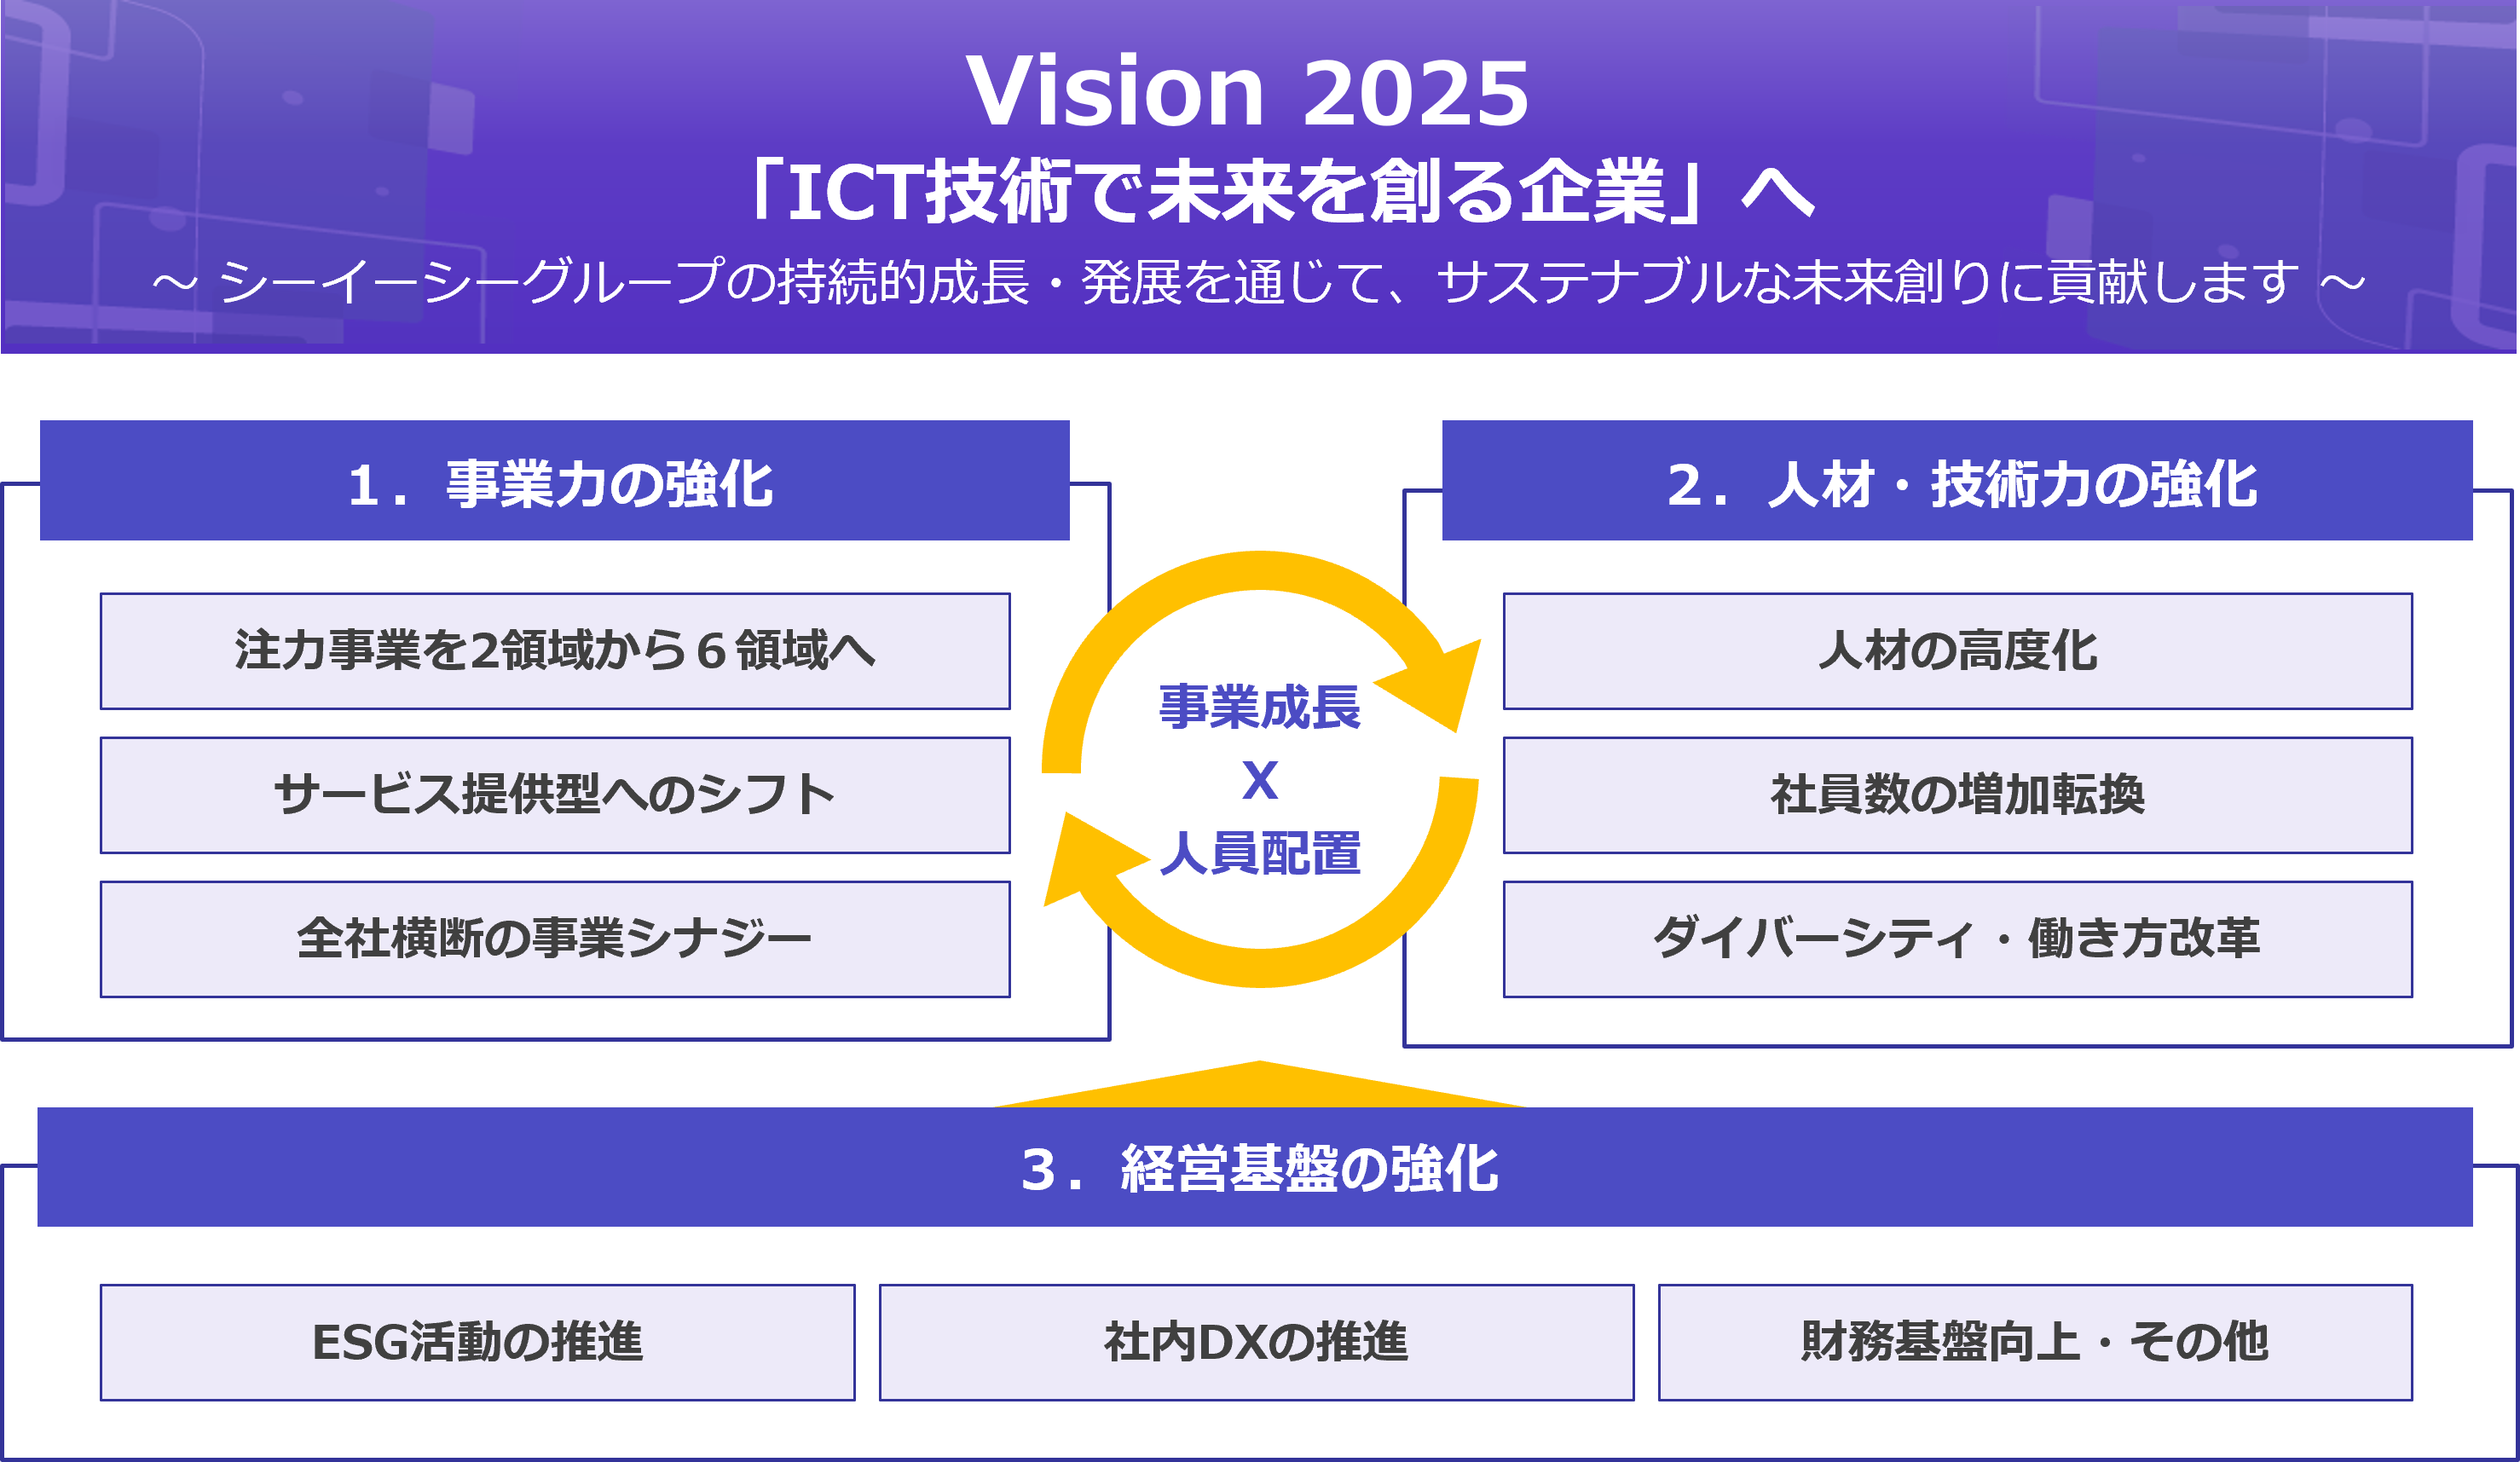 基本方針「ICT技術で未来を創る企業」